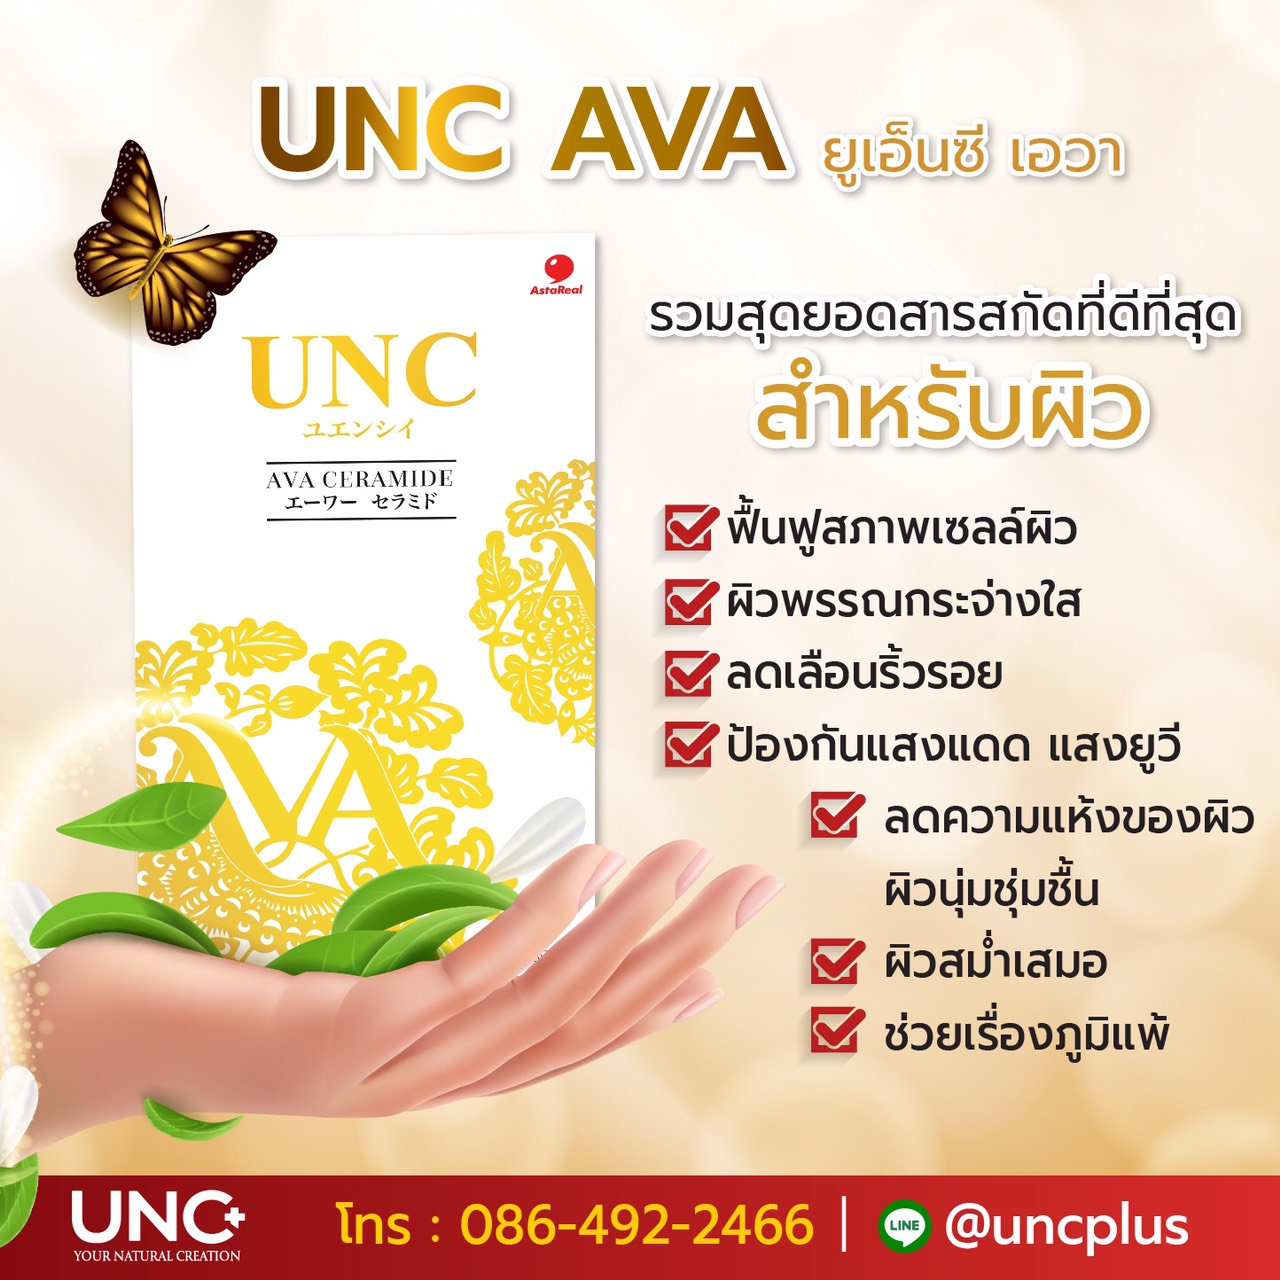 UNC AVA มีส่วนผสมและวิตามินที่เข้มข้นถึง 15 ชนิด